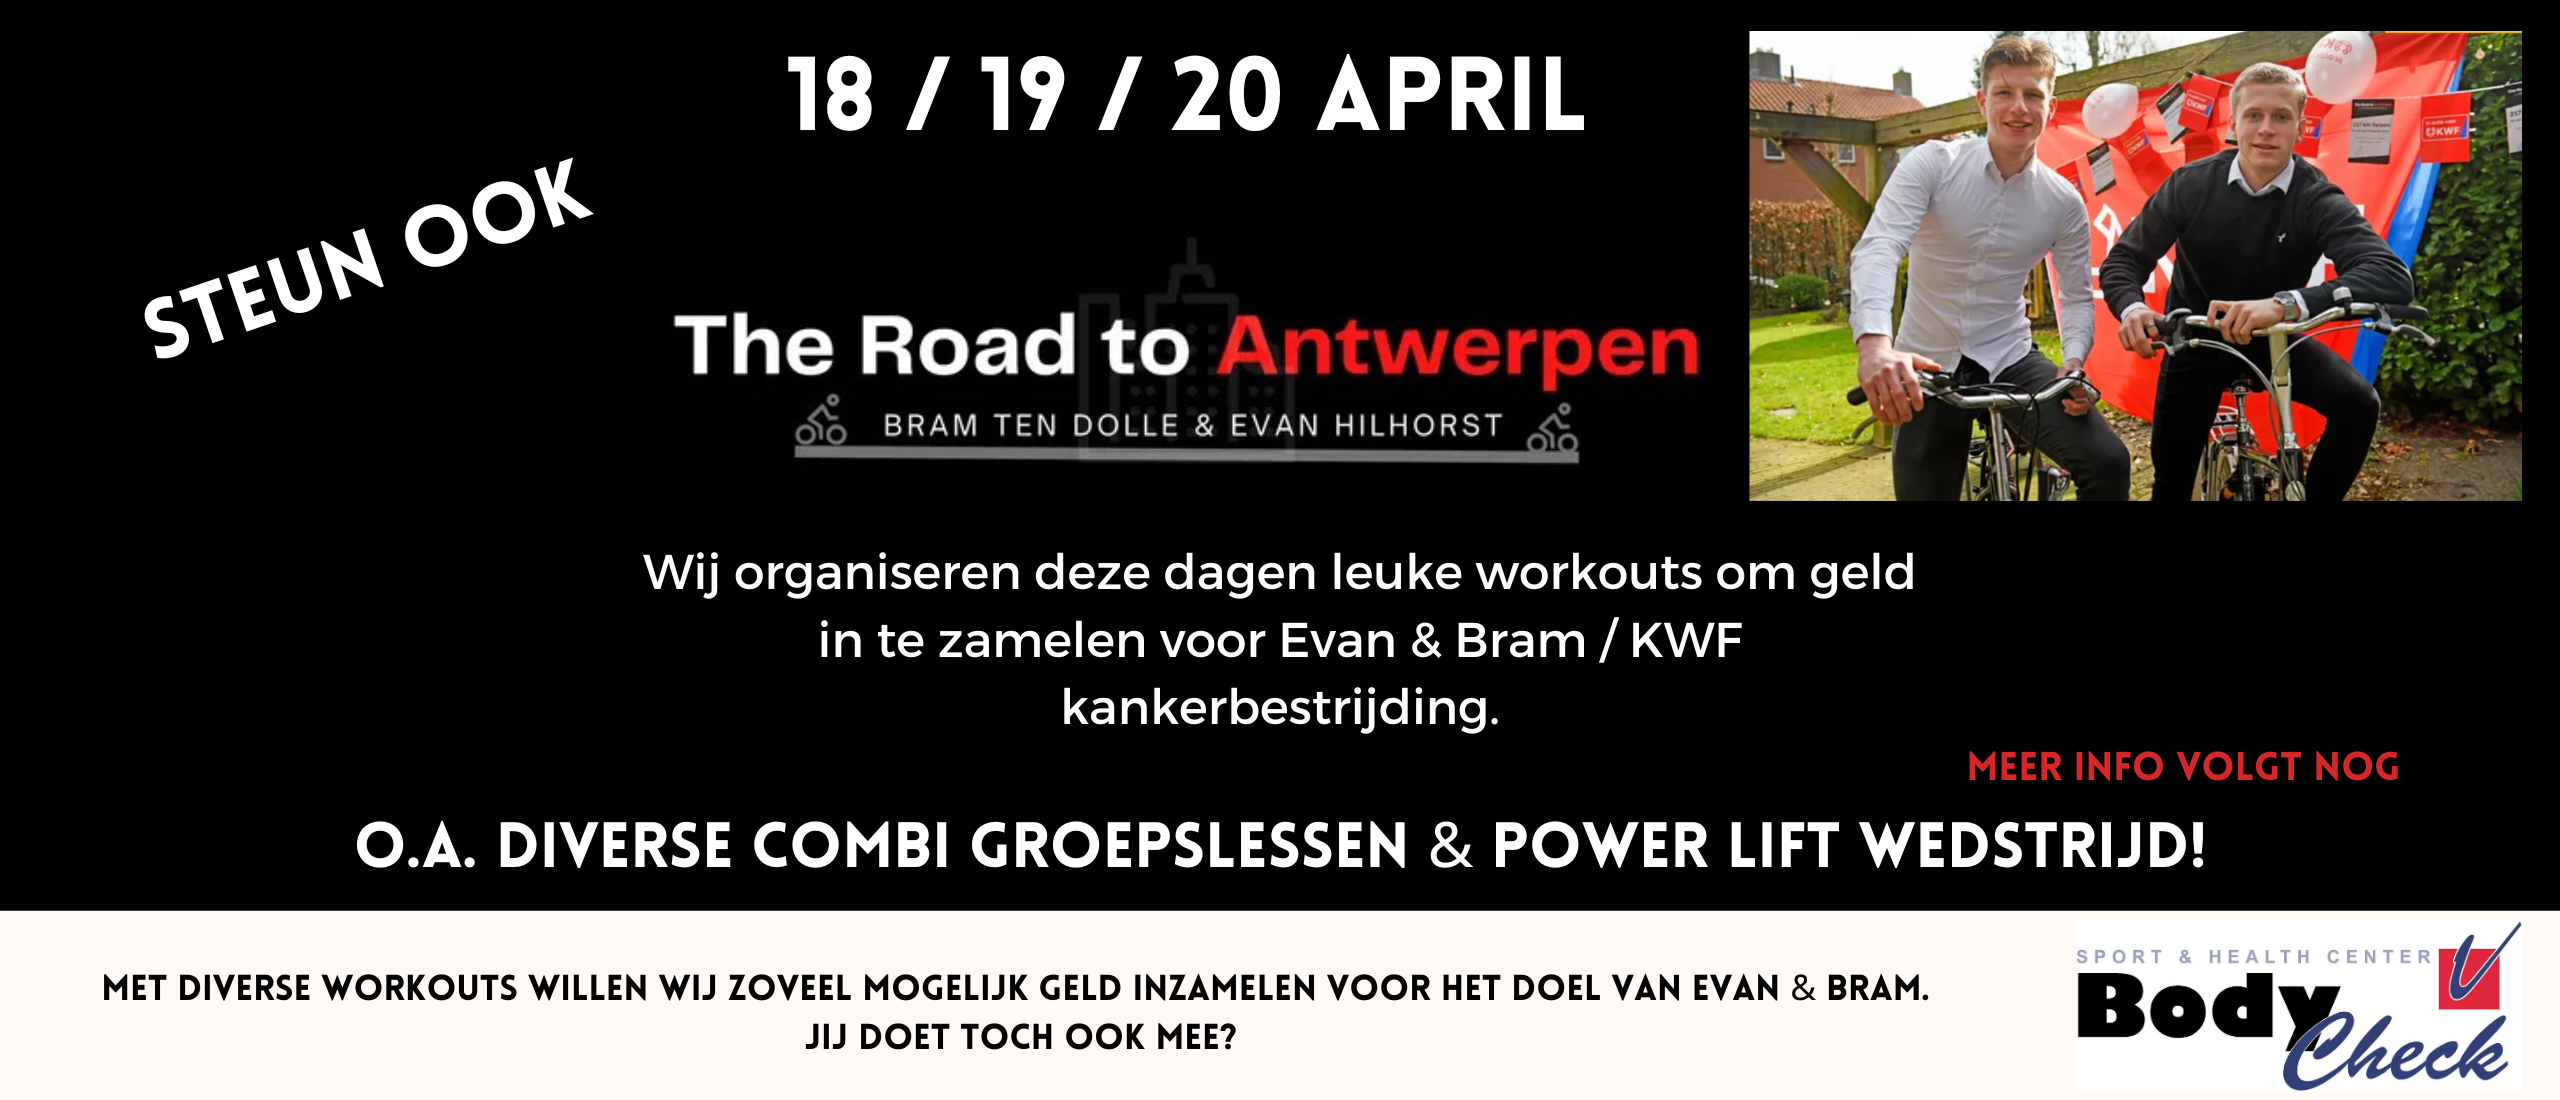 The road to Antwerpen